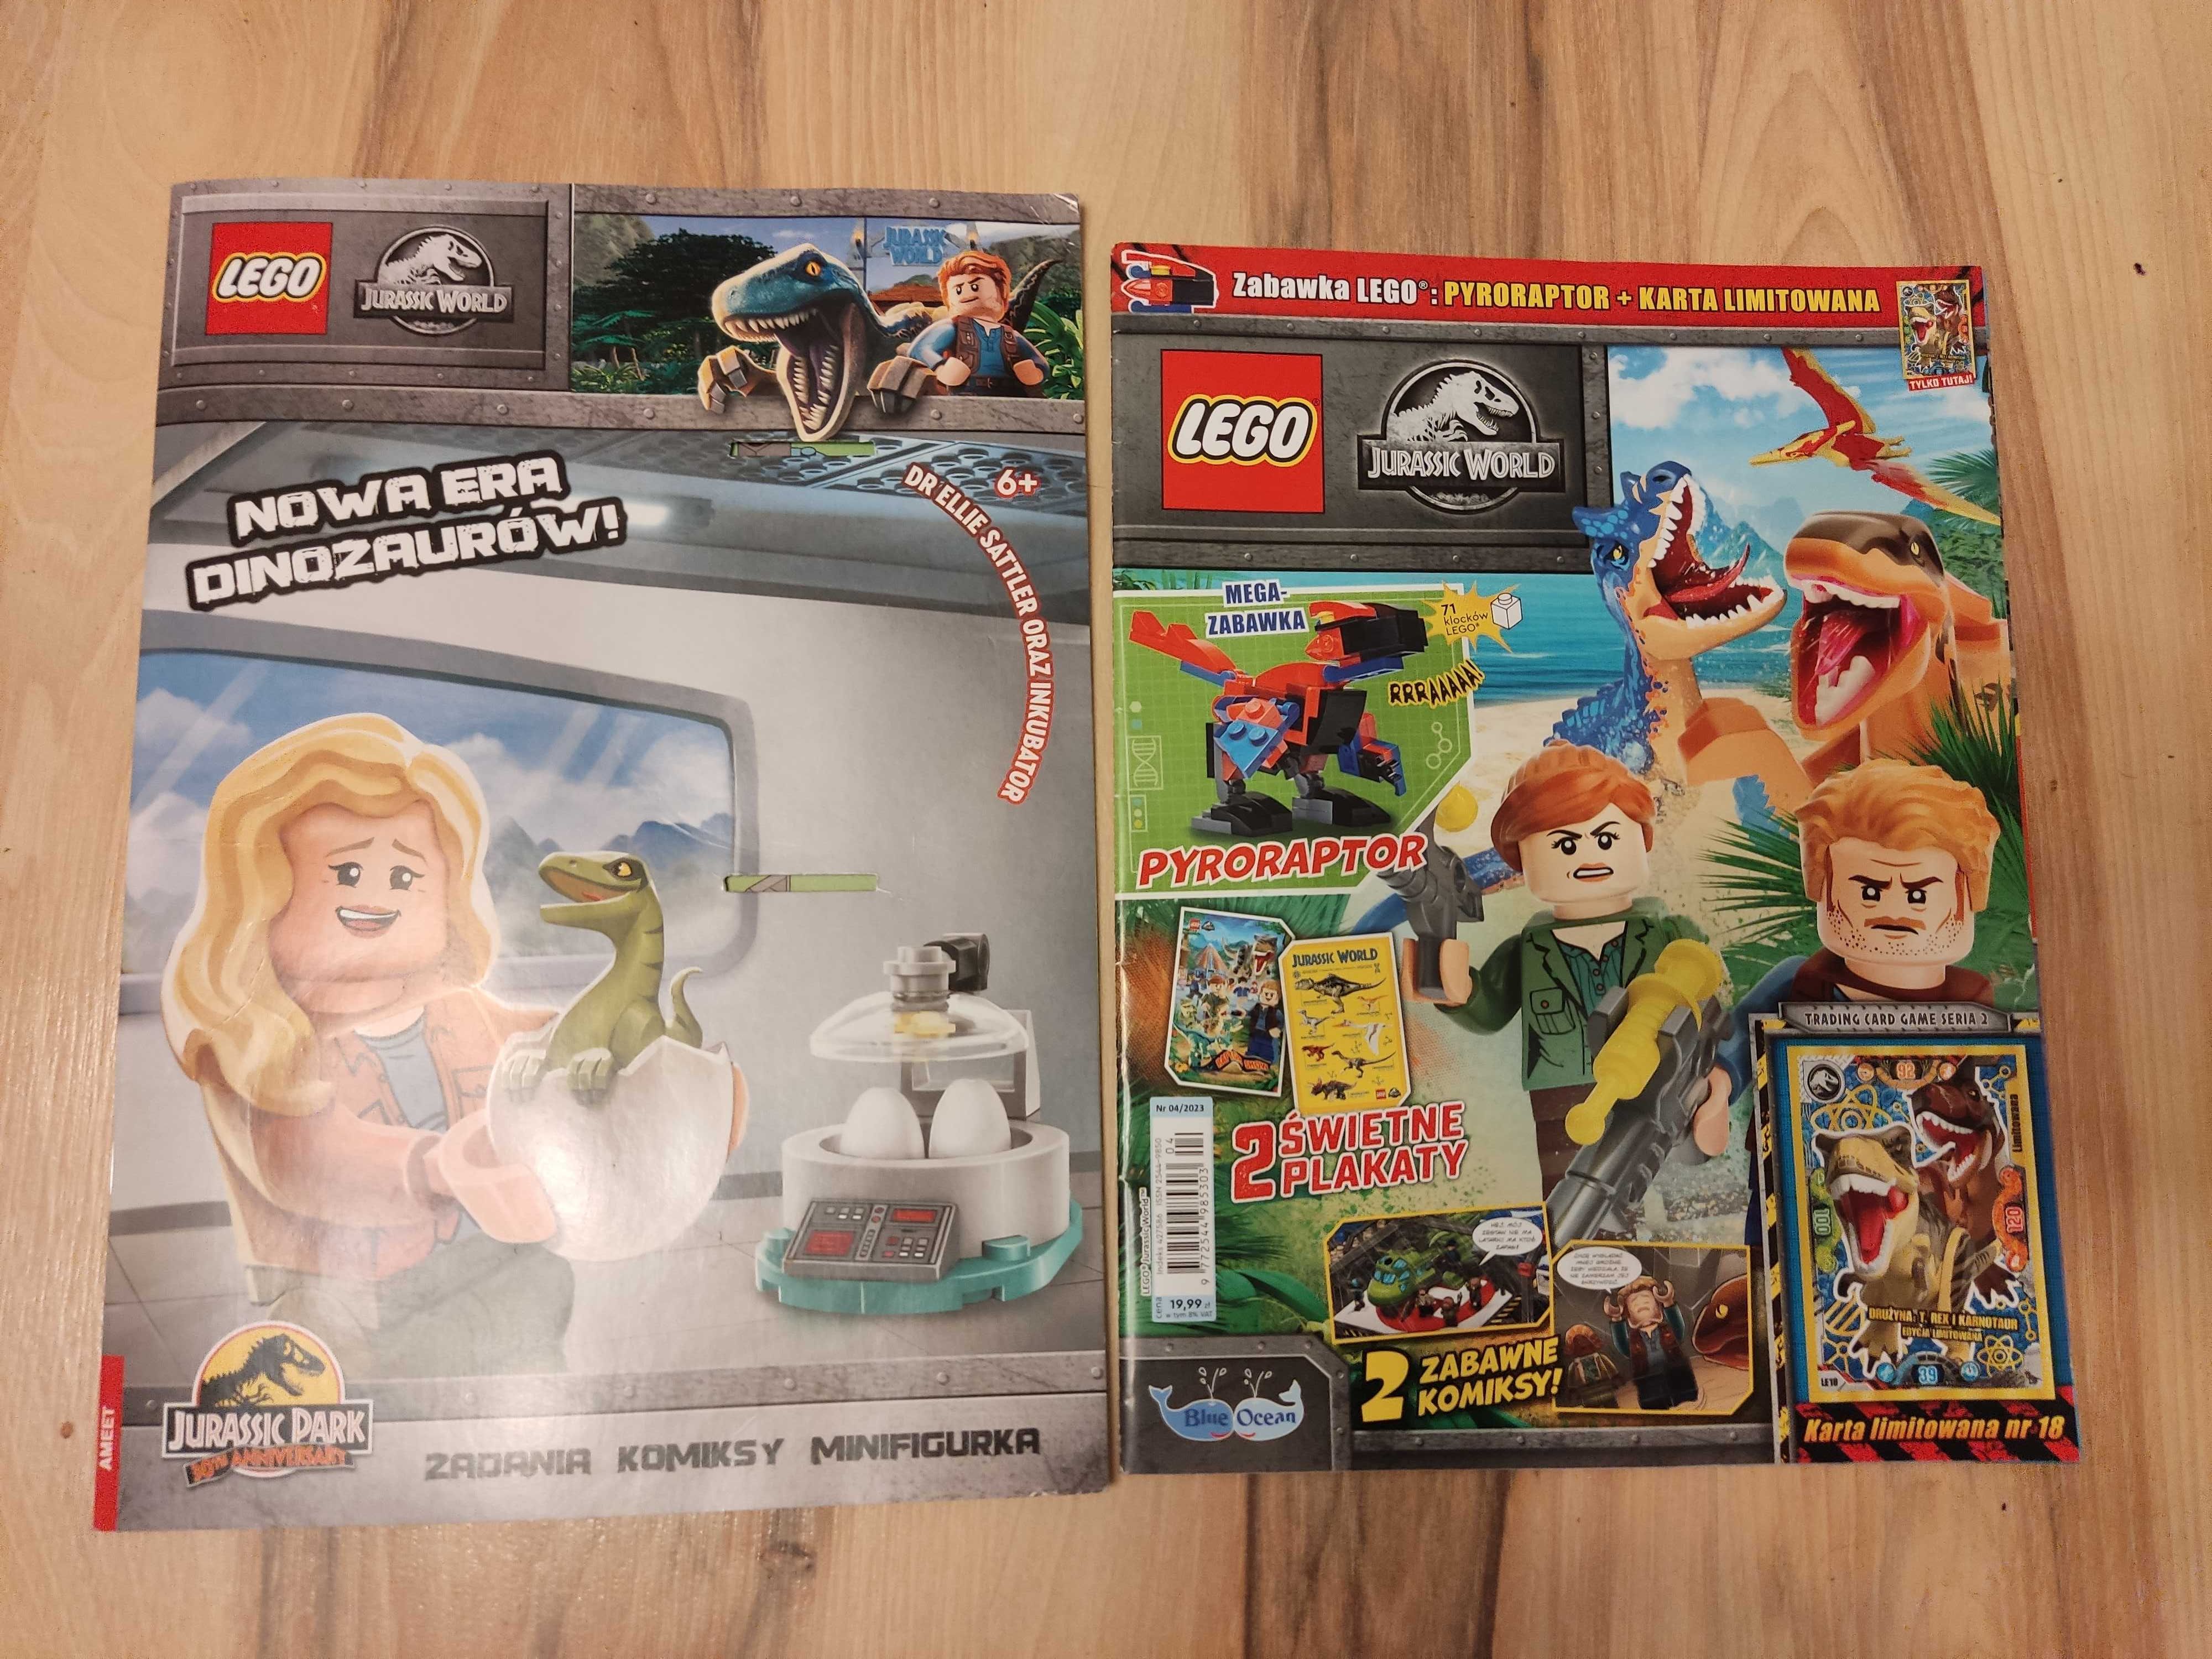 2 gazetki LEGO Jurassic World bez dodatków